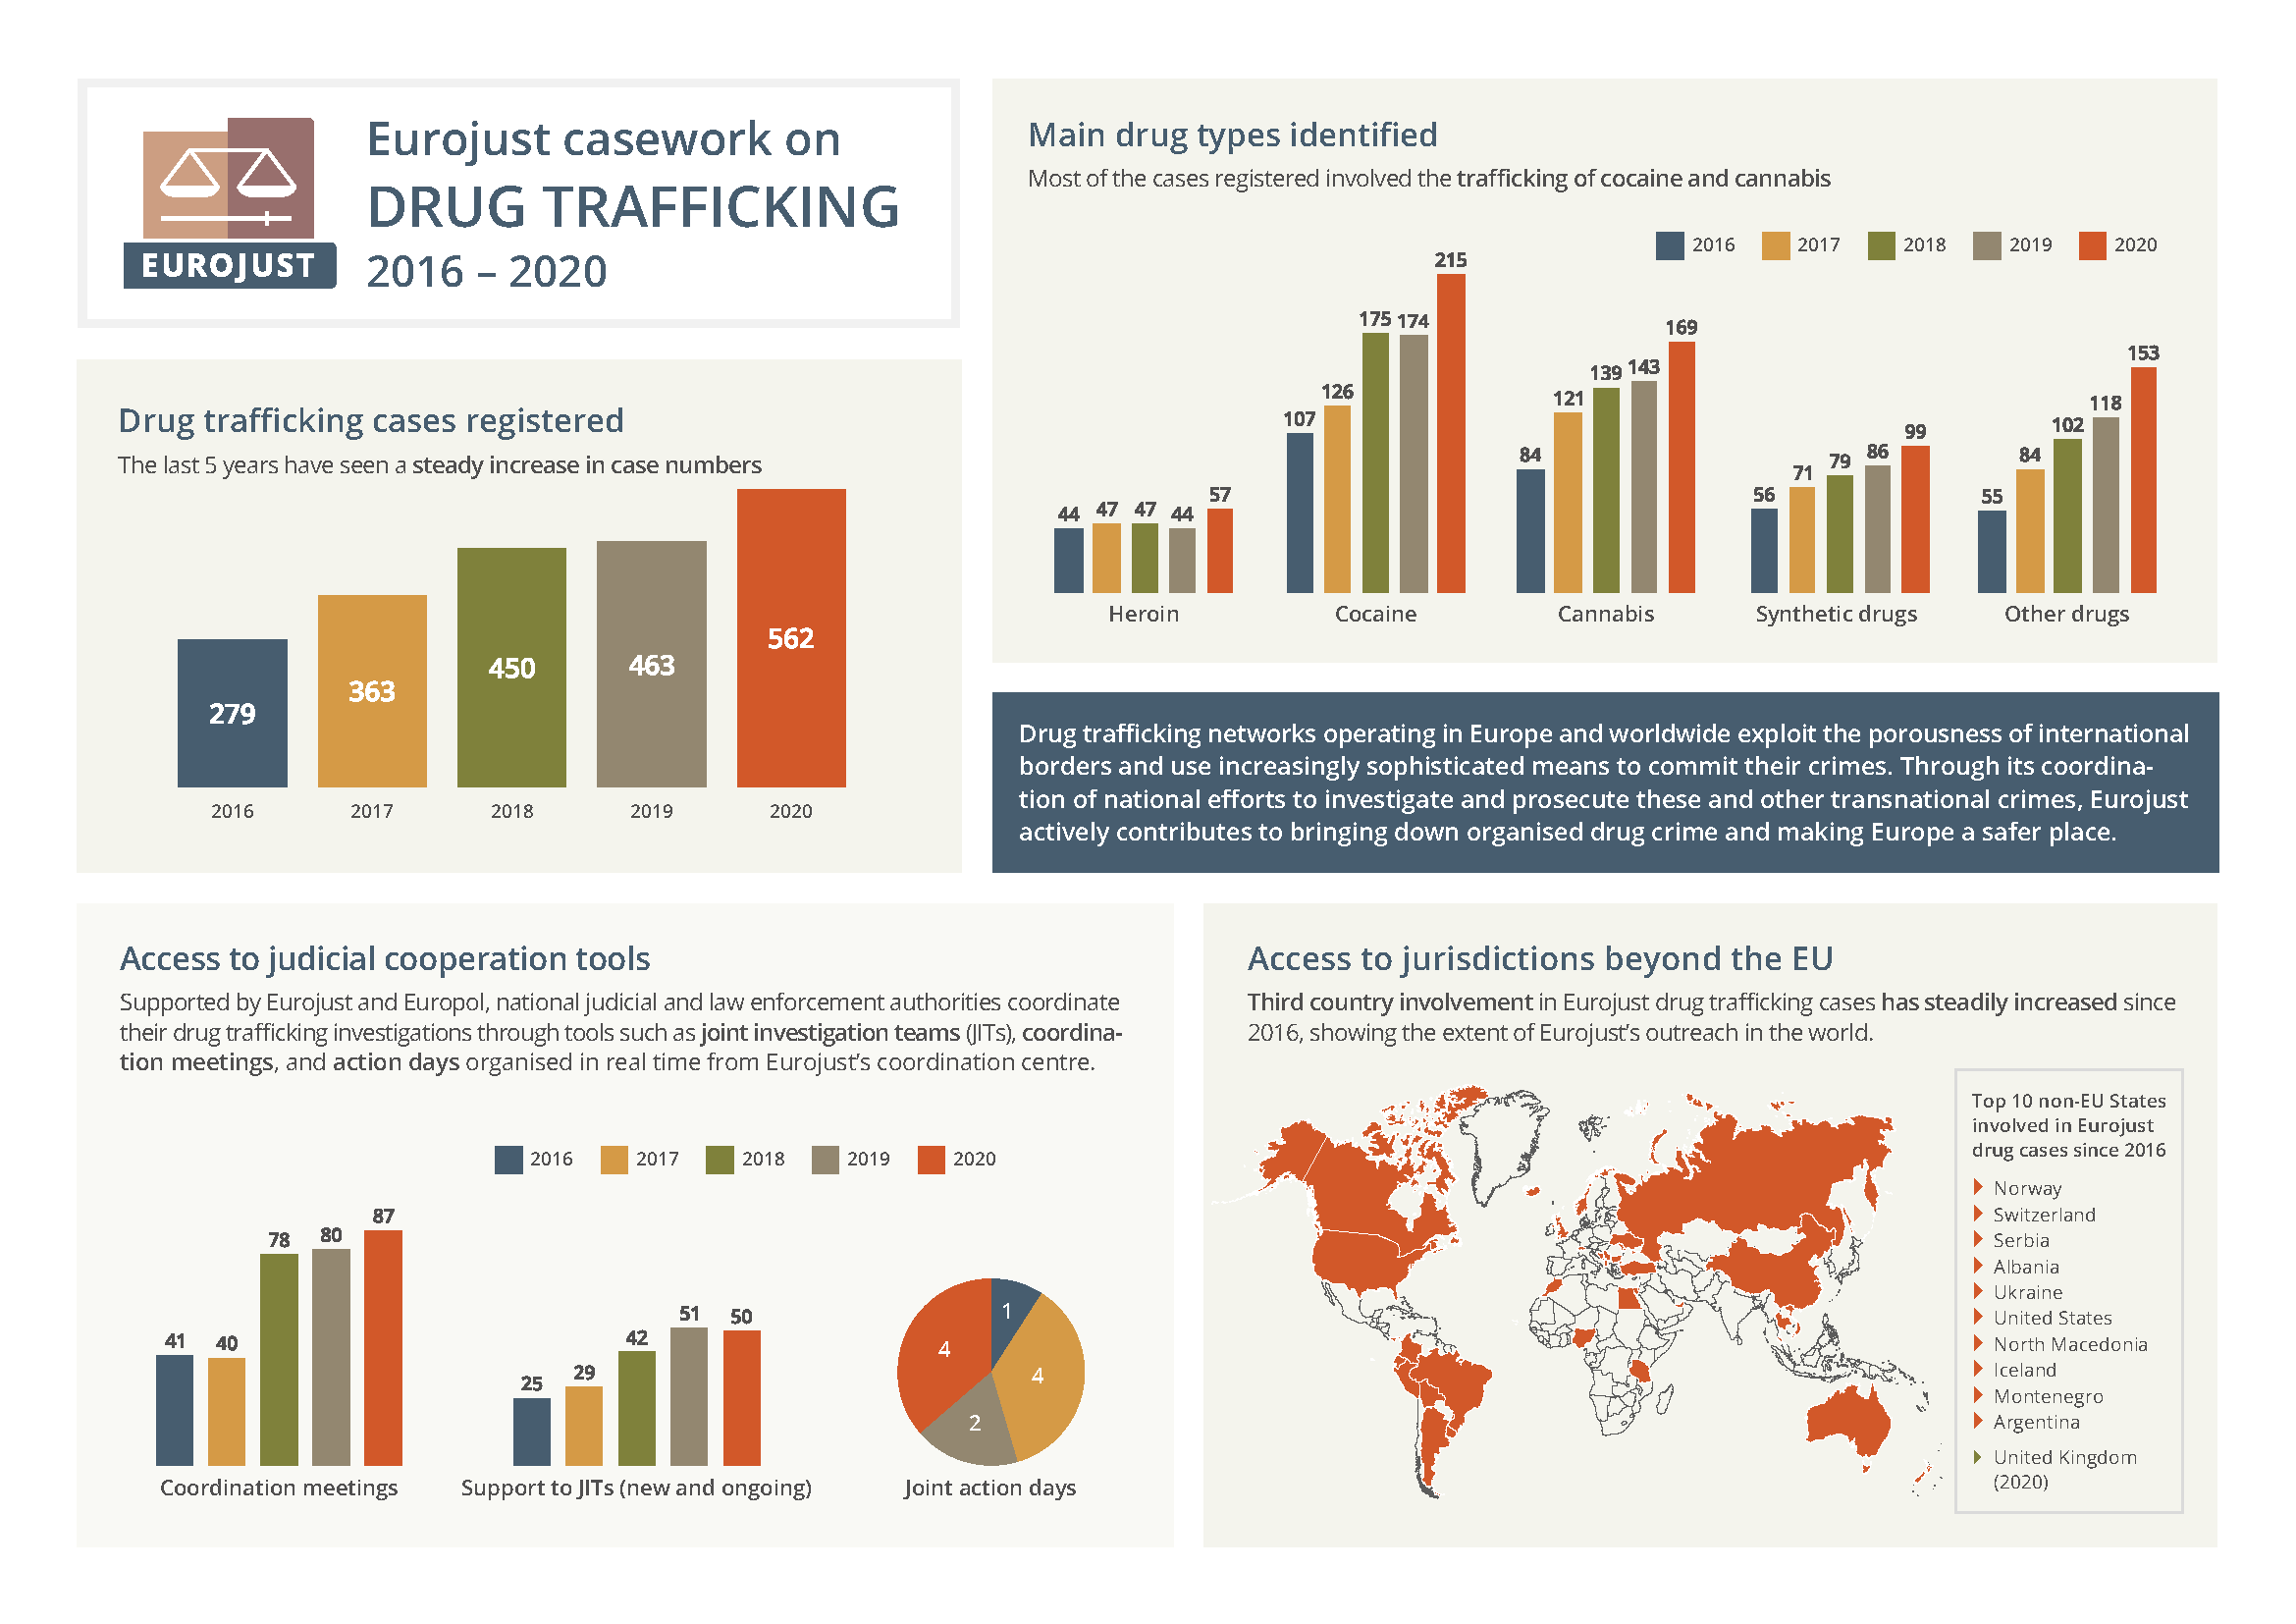 Eurojust casework on drug trafficking, 2016-2020